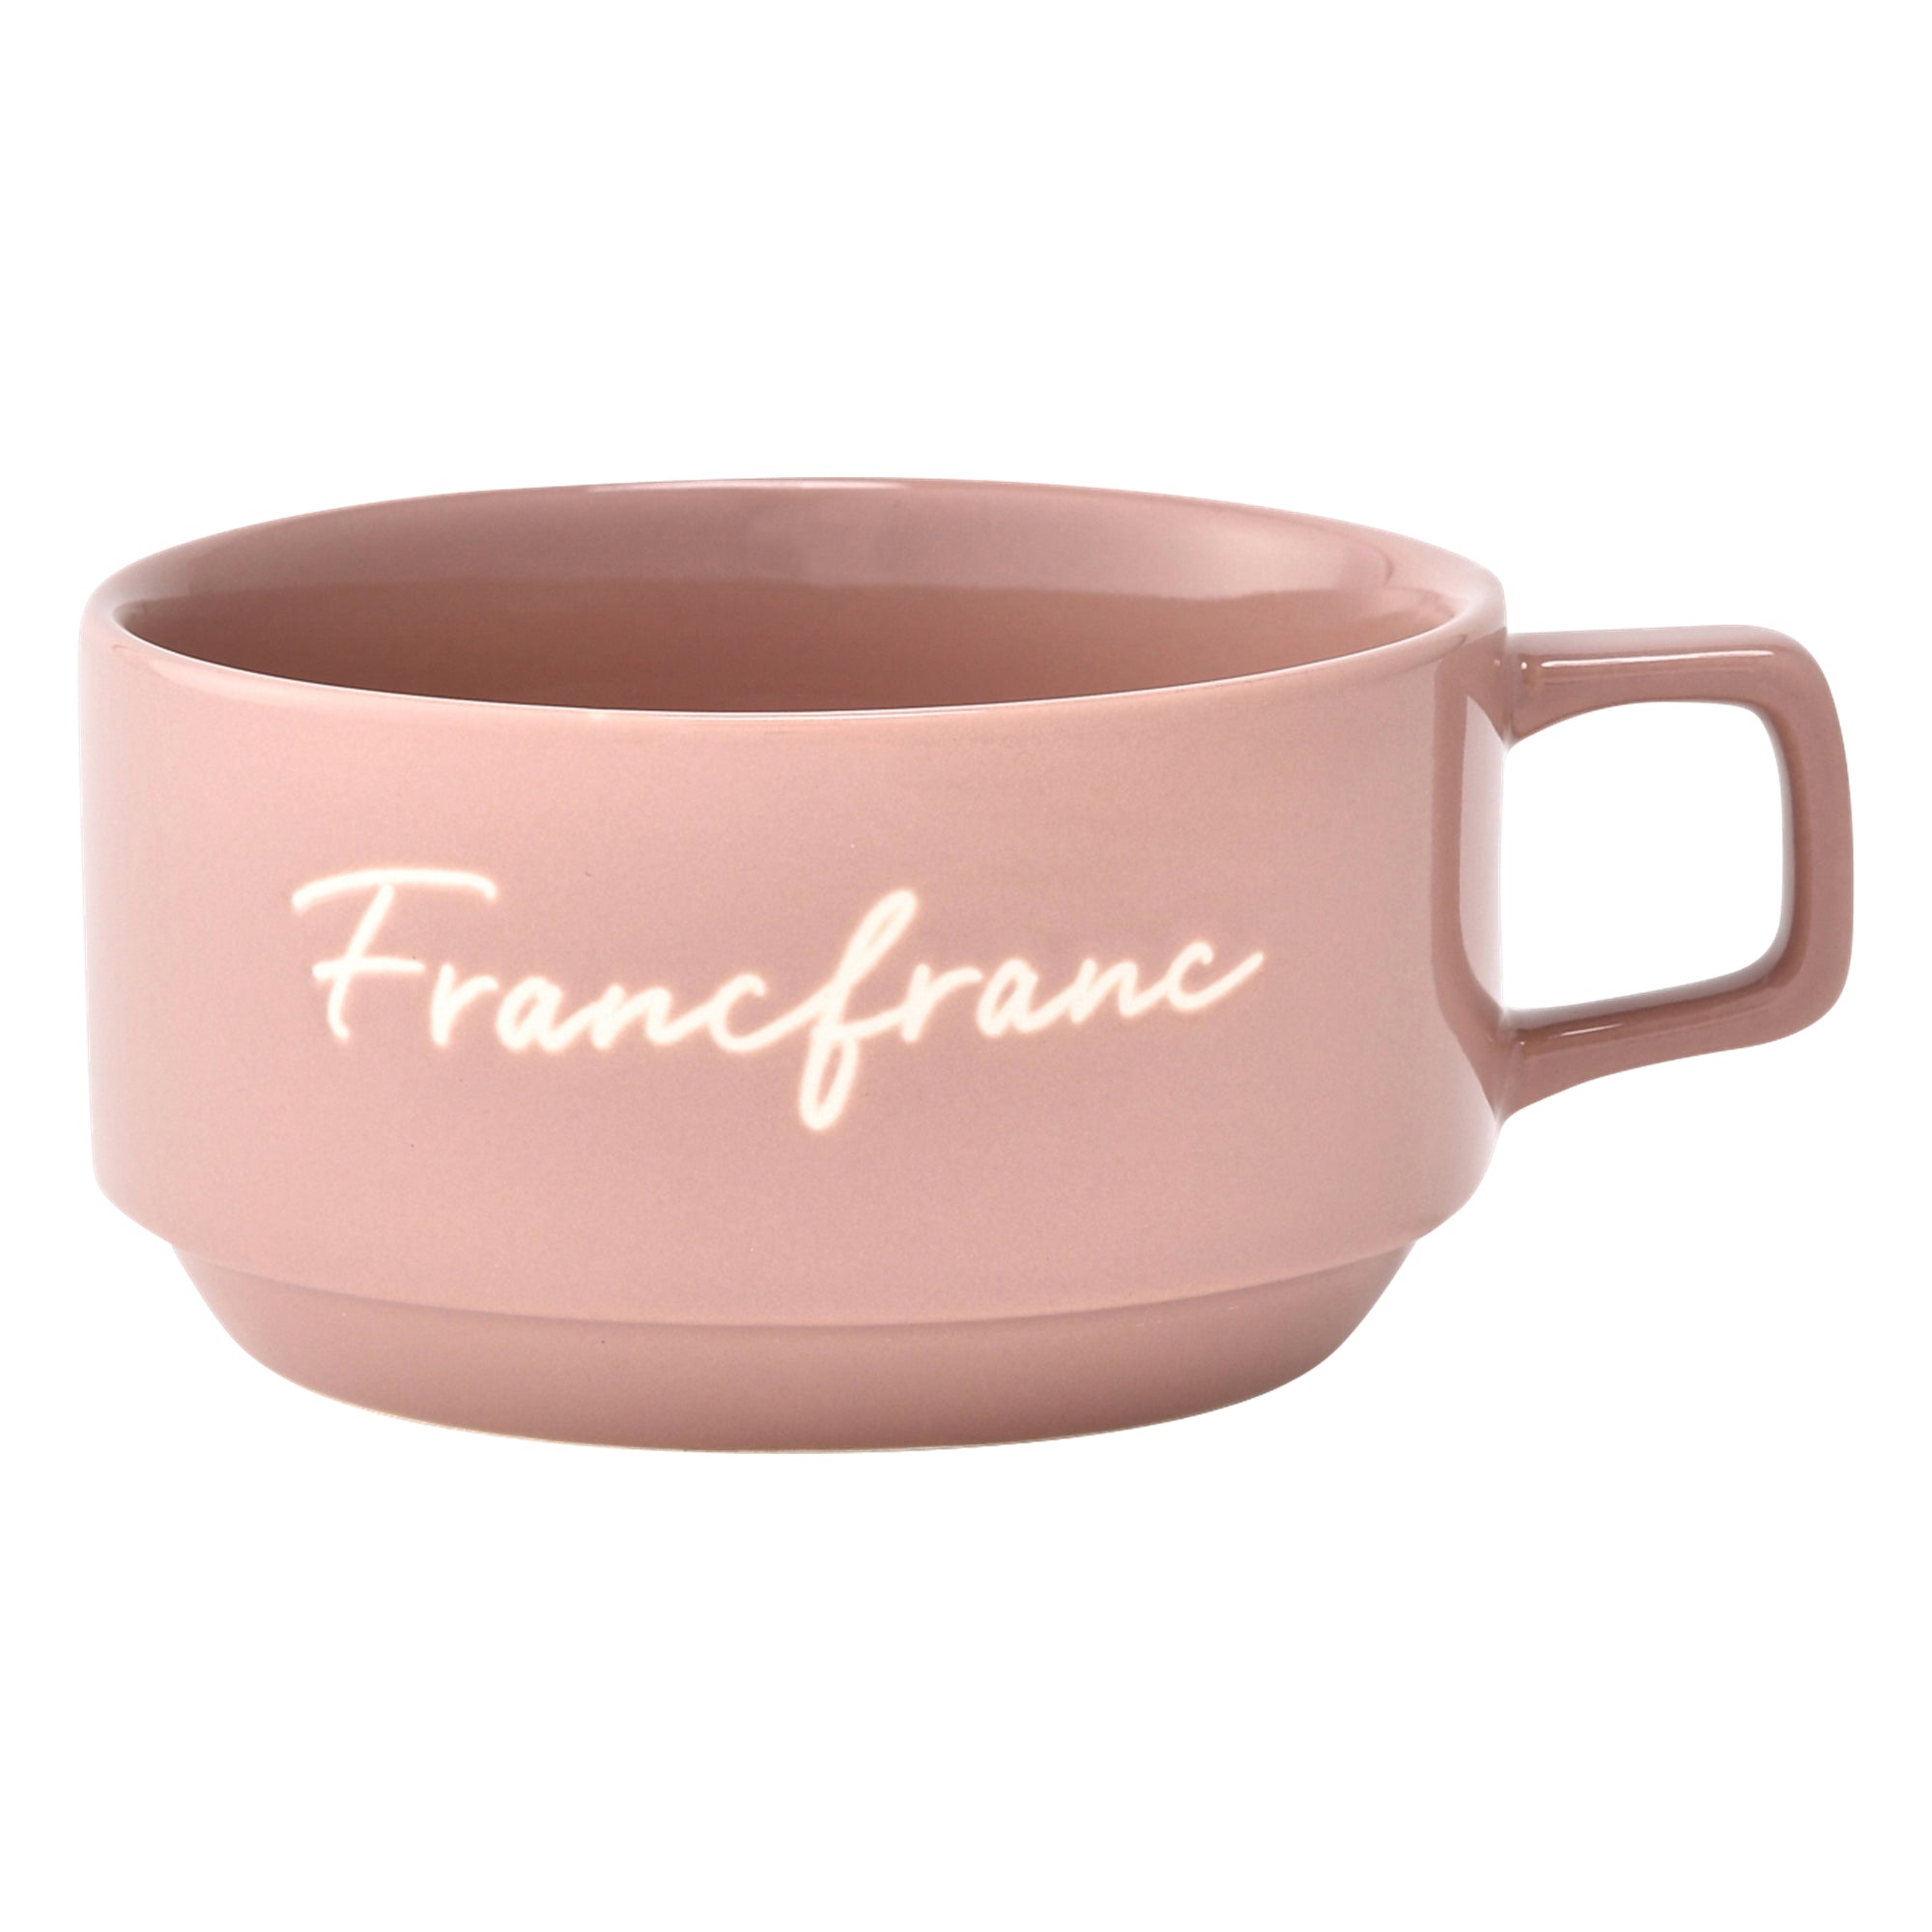 ロゴ スープカップ ピンク Francfranc フランフラン 公式通販 家具 インテリア 生活雑貨